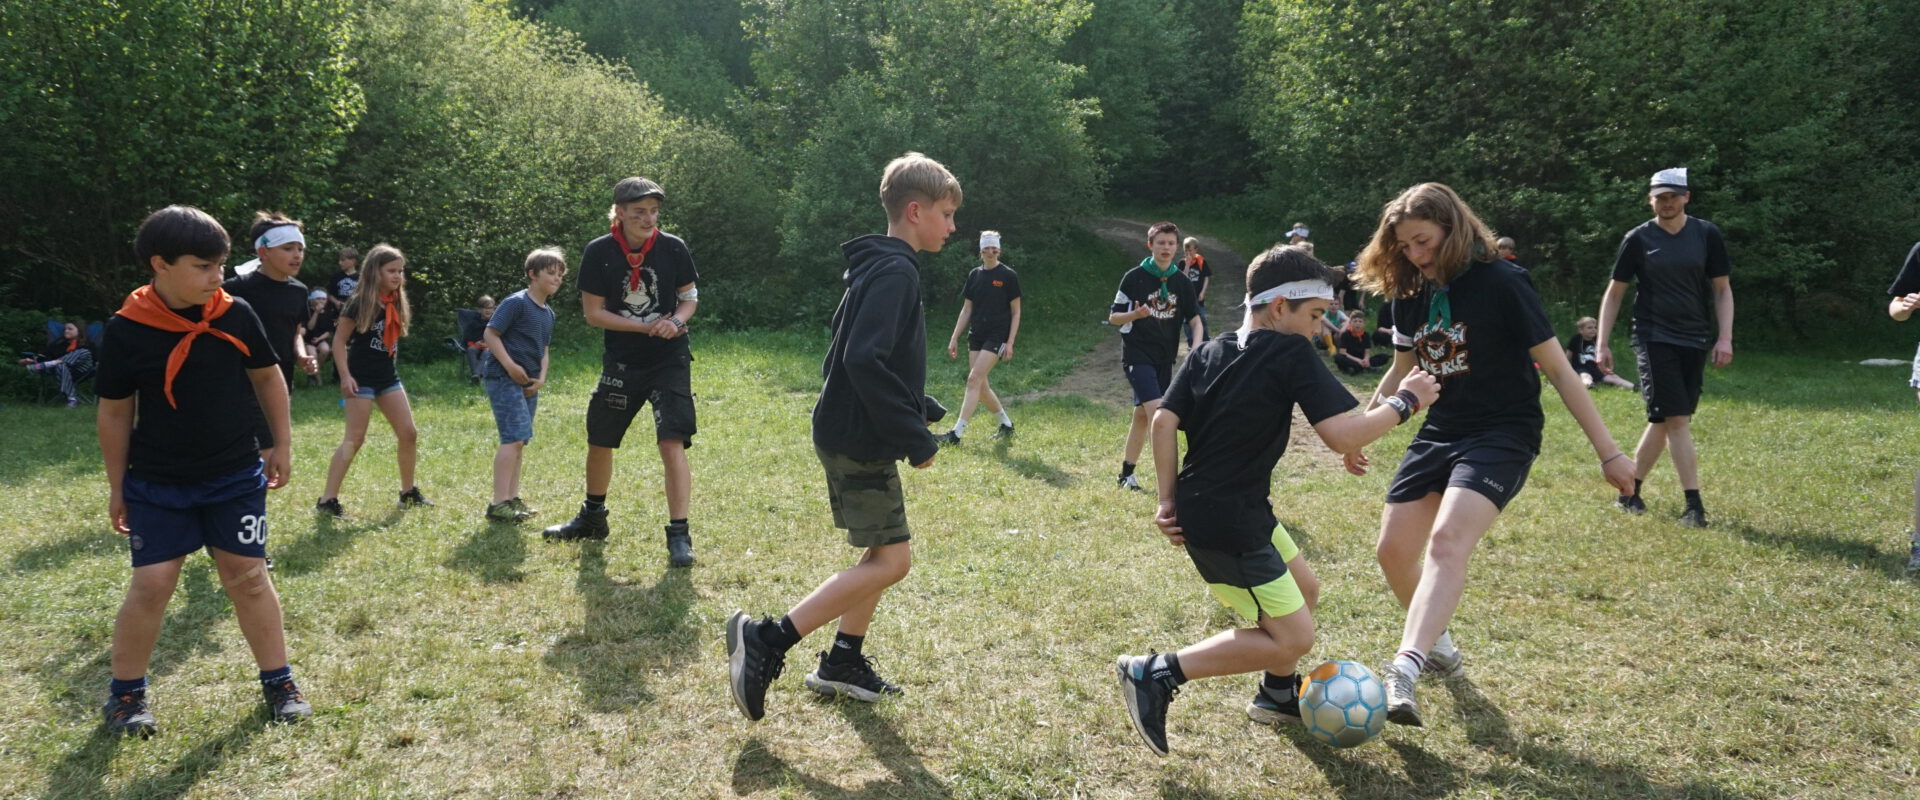 Gruppenkinder spielen Fußball